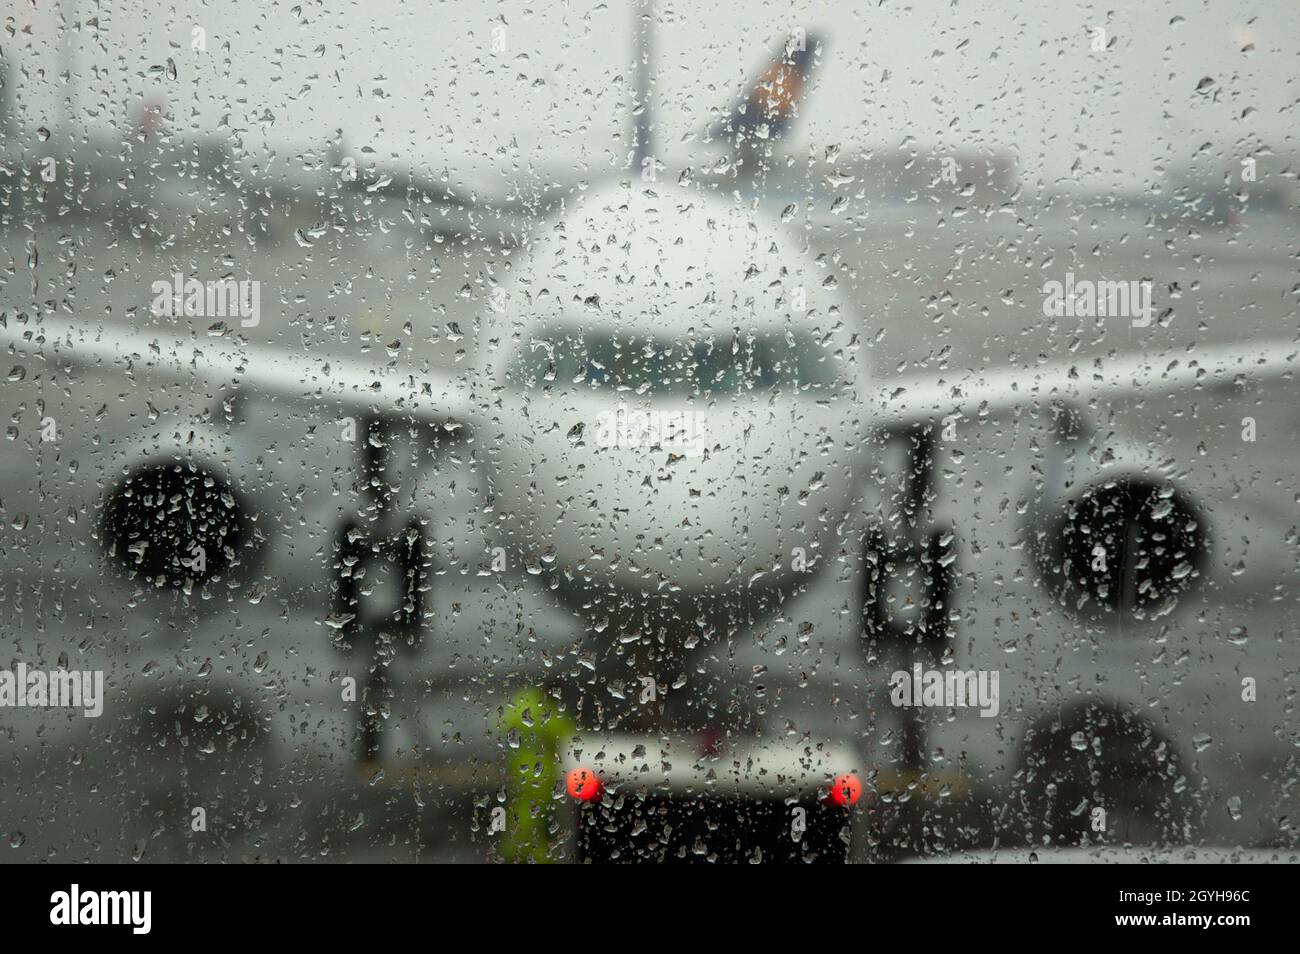 Aeroplano sulla pista visto attraverso la finestra bagnata il giorno piovoso - fuoco sulle gocce dell'acqua sulla finestra Foto Stock